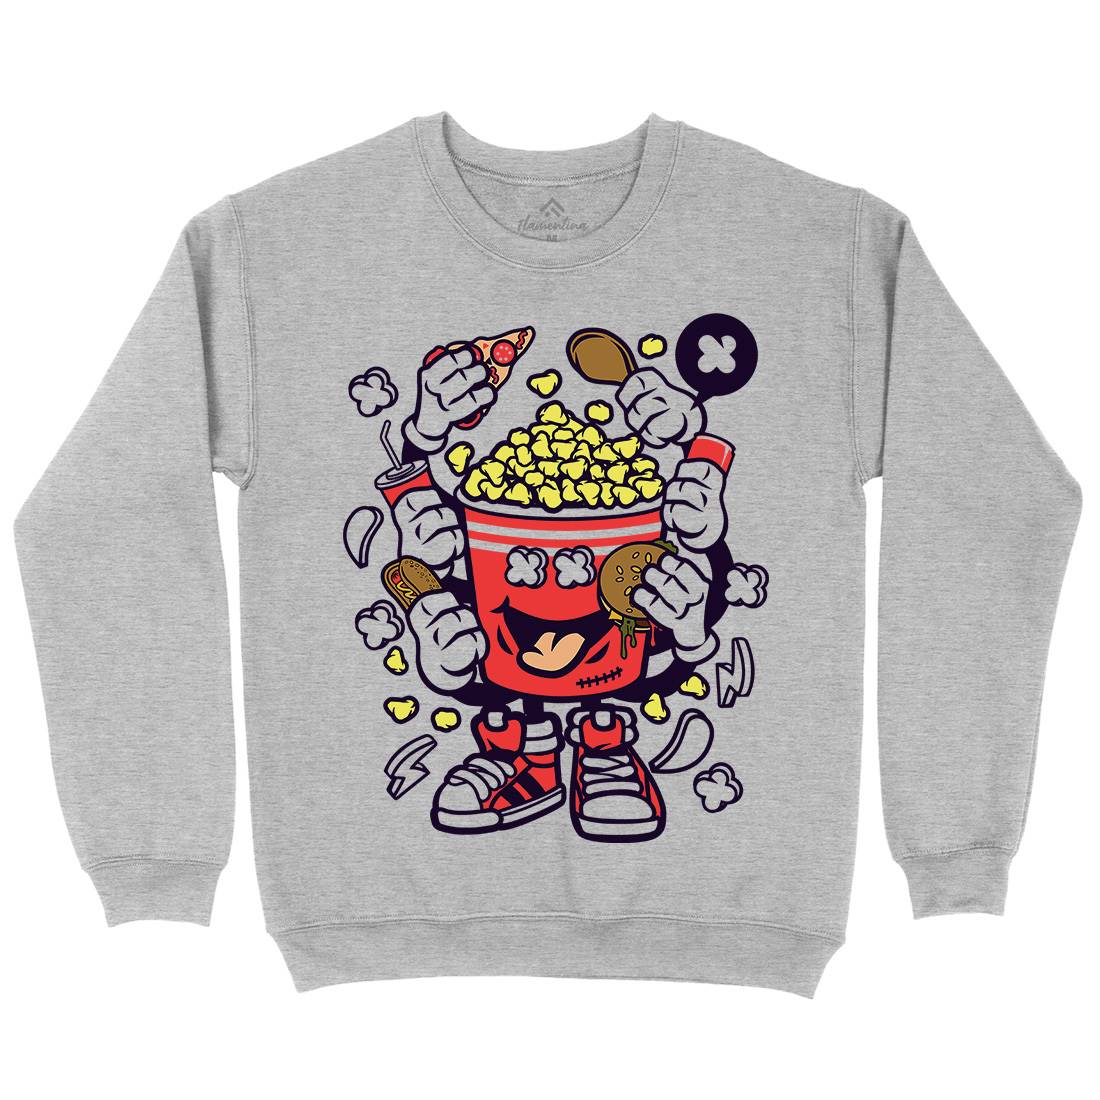 Popcorn Monster Mens Crew Neck Sweatshirt Food C197